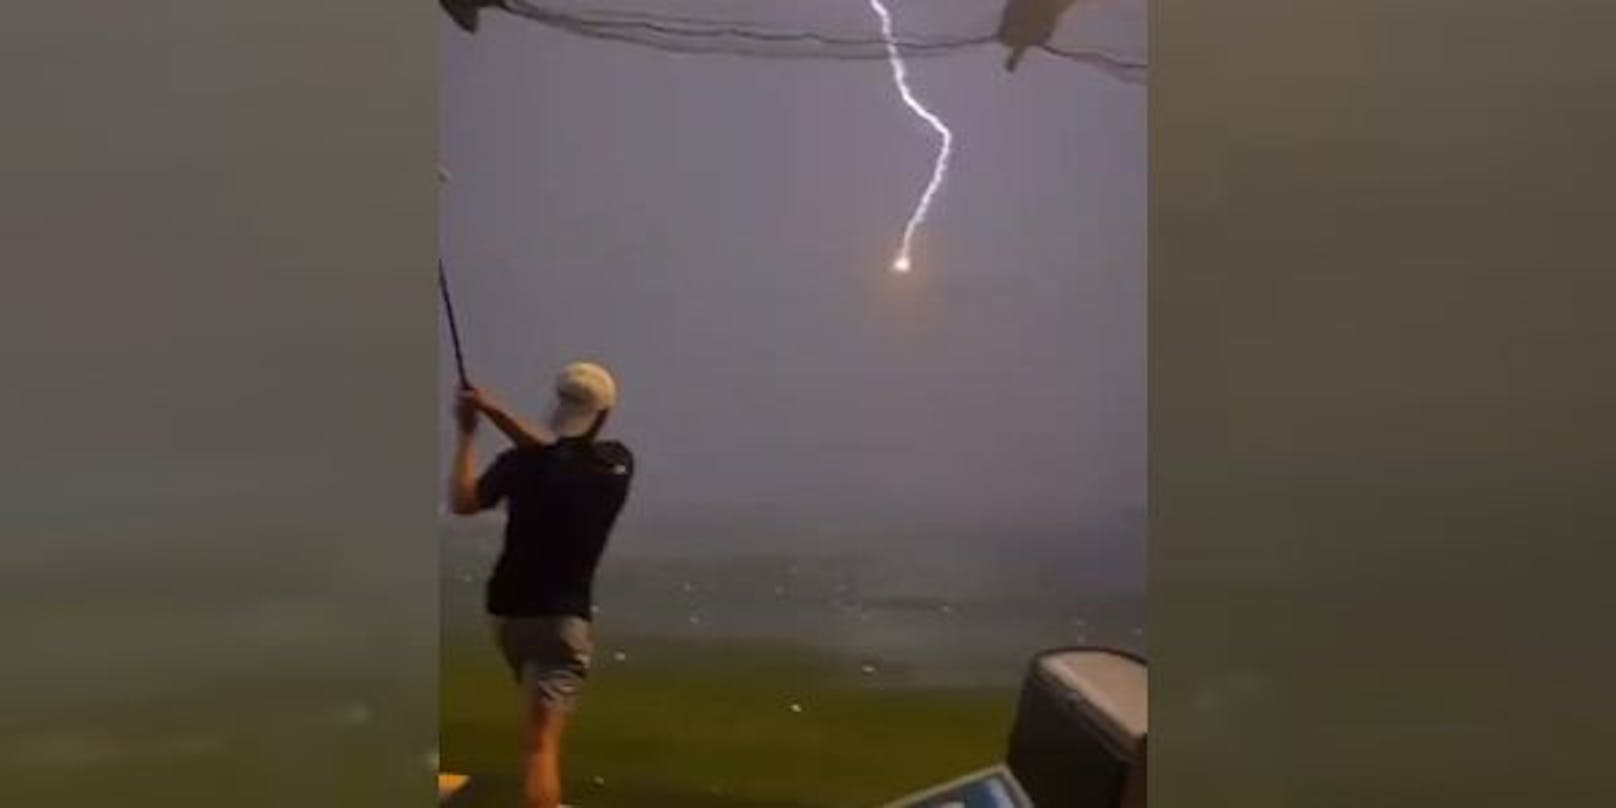 Es scheint, als würde der Golfball in der Luft von einem Blitz "abgeschossen" werden.